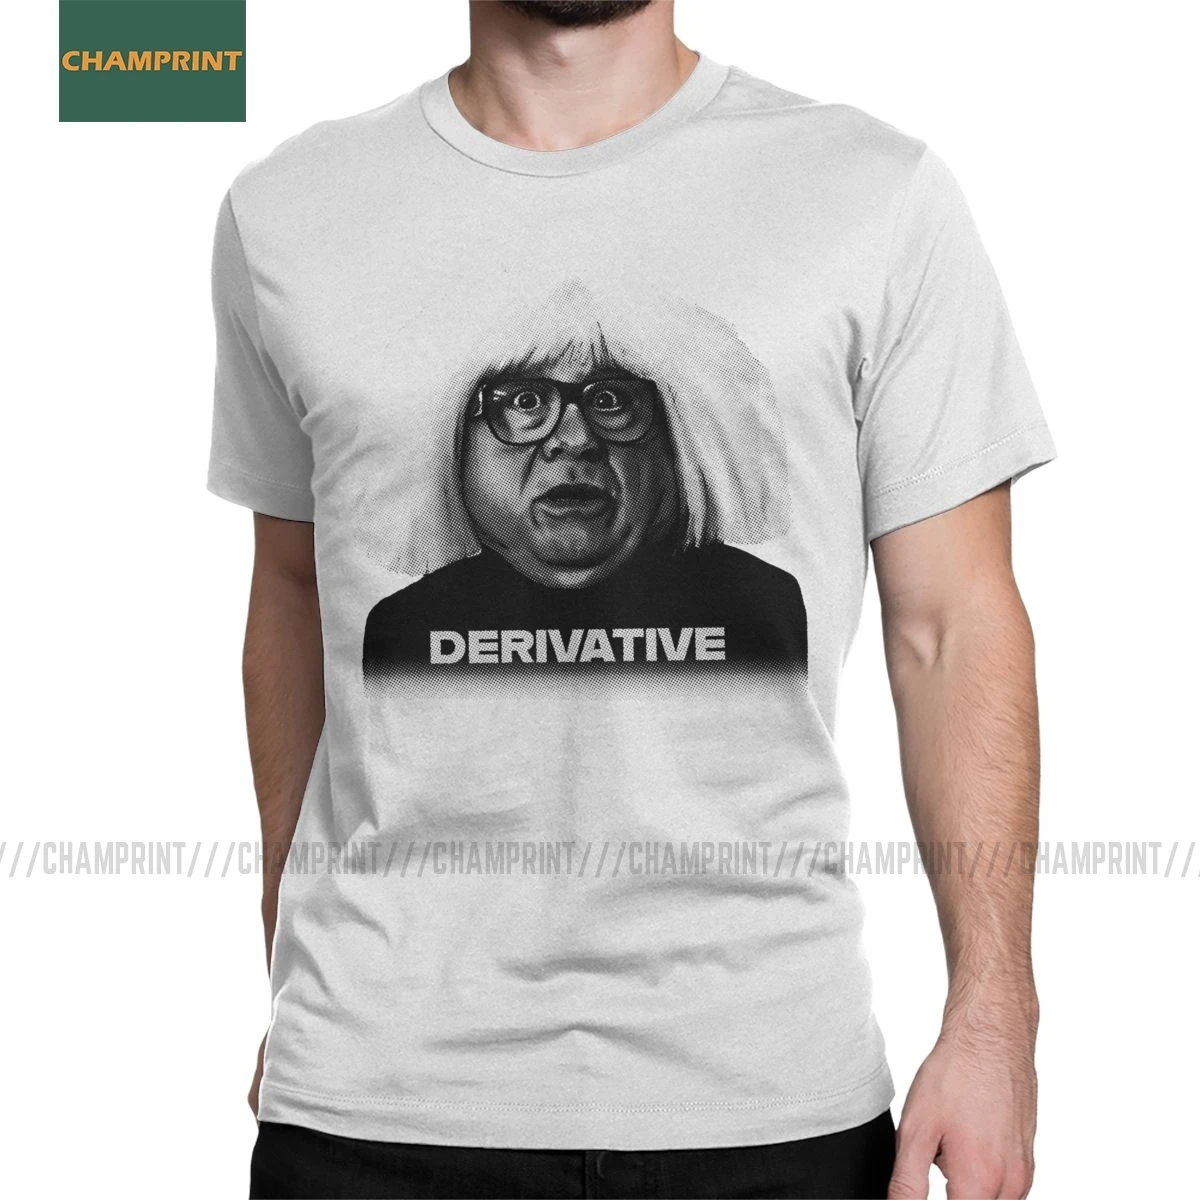 T-Shirt Ongo Gablogian Derivative It's sempre Sunny In filfia uomo magliette a maniche corte In cotone con maglietta a maniche corte